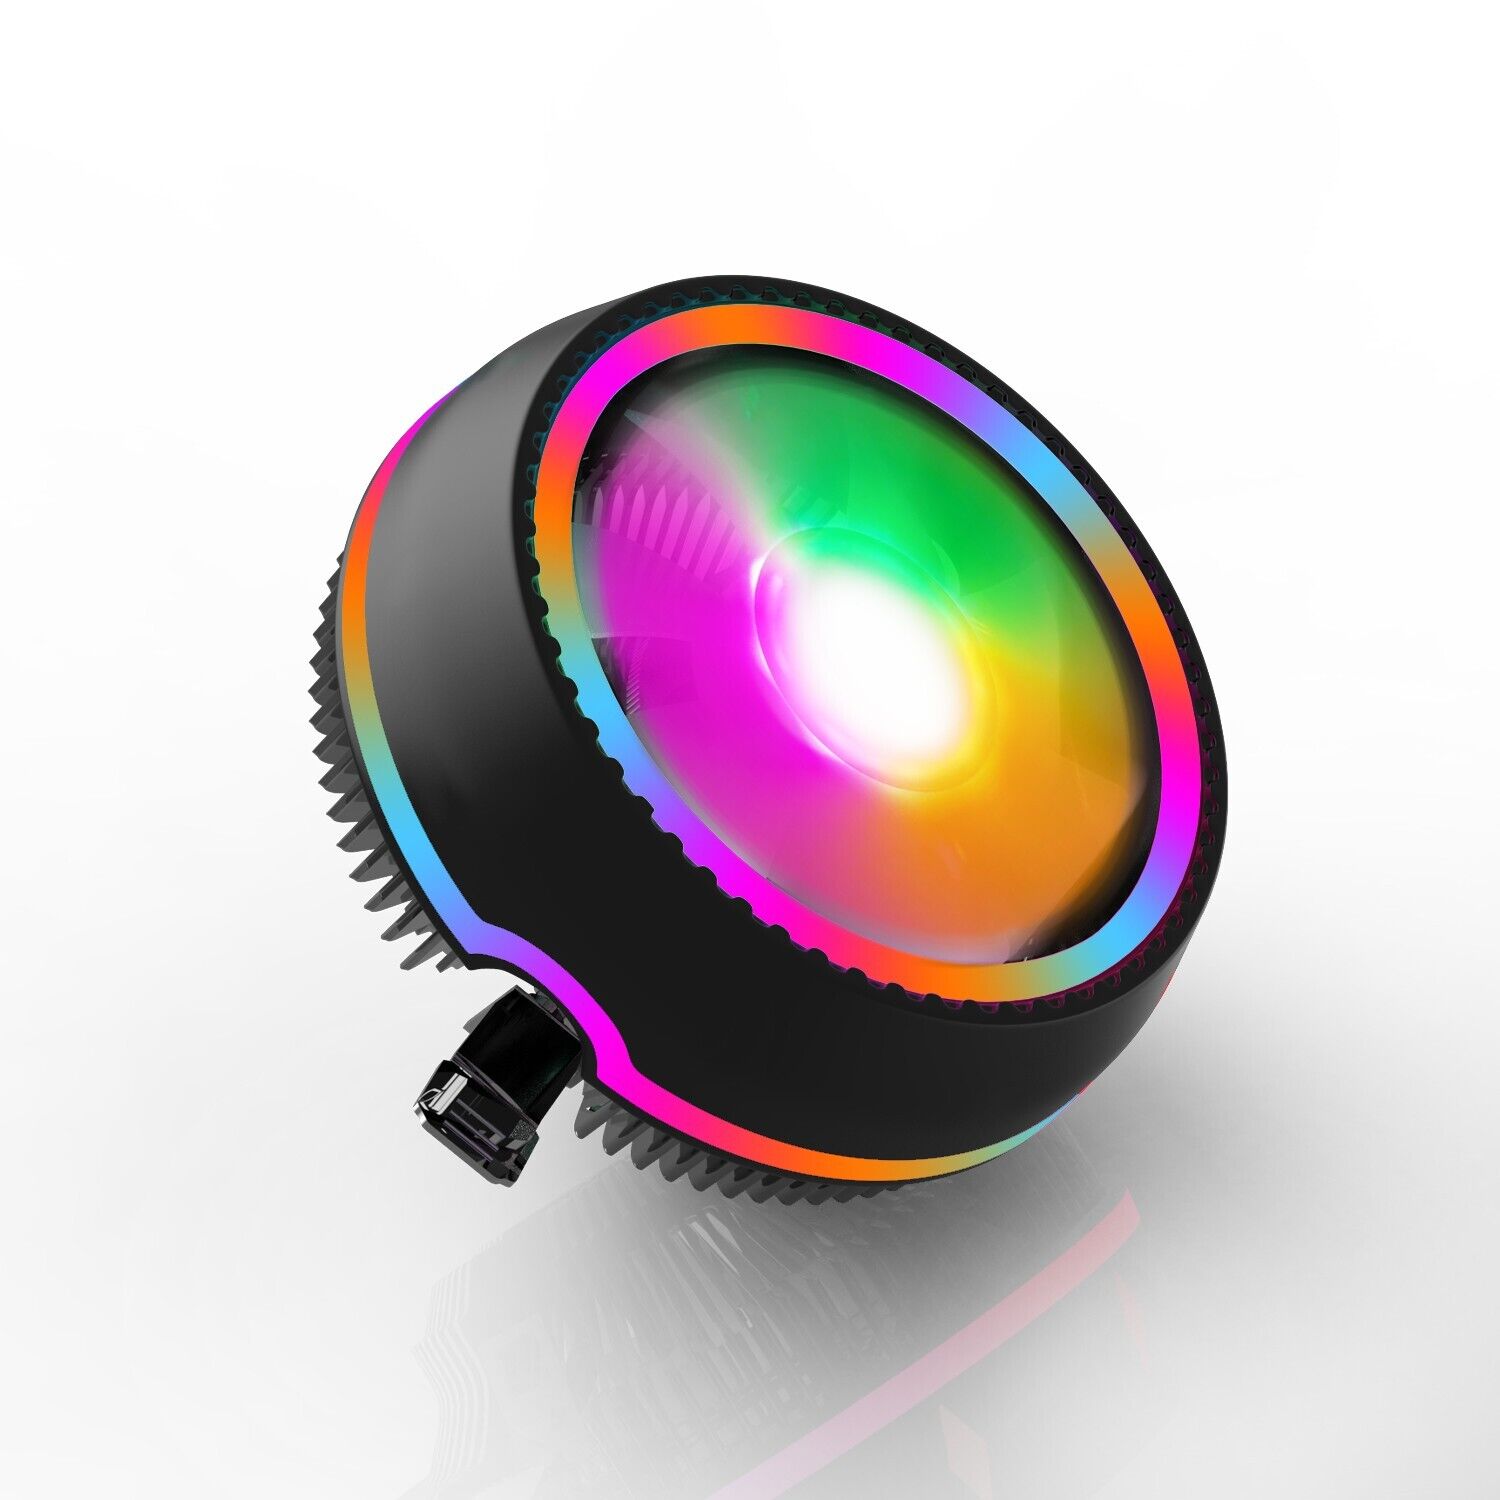 CPU Cooler RGB Cooling Fan Heatsink For Intel LGA 1156/1155/1151/1366/775/i5/AMD